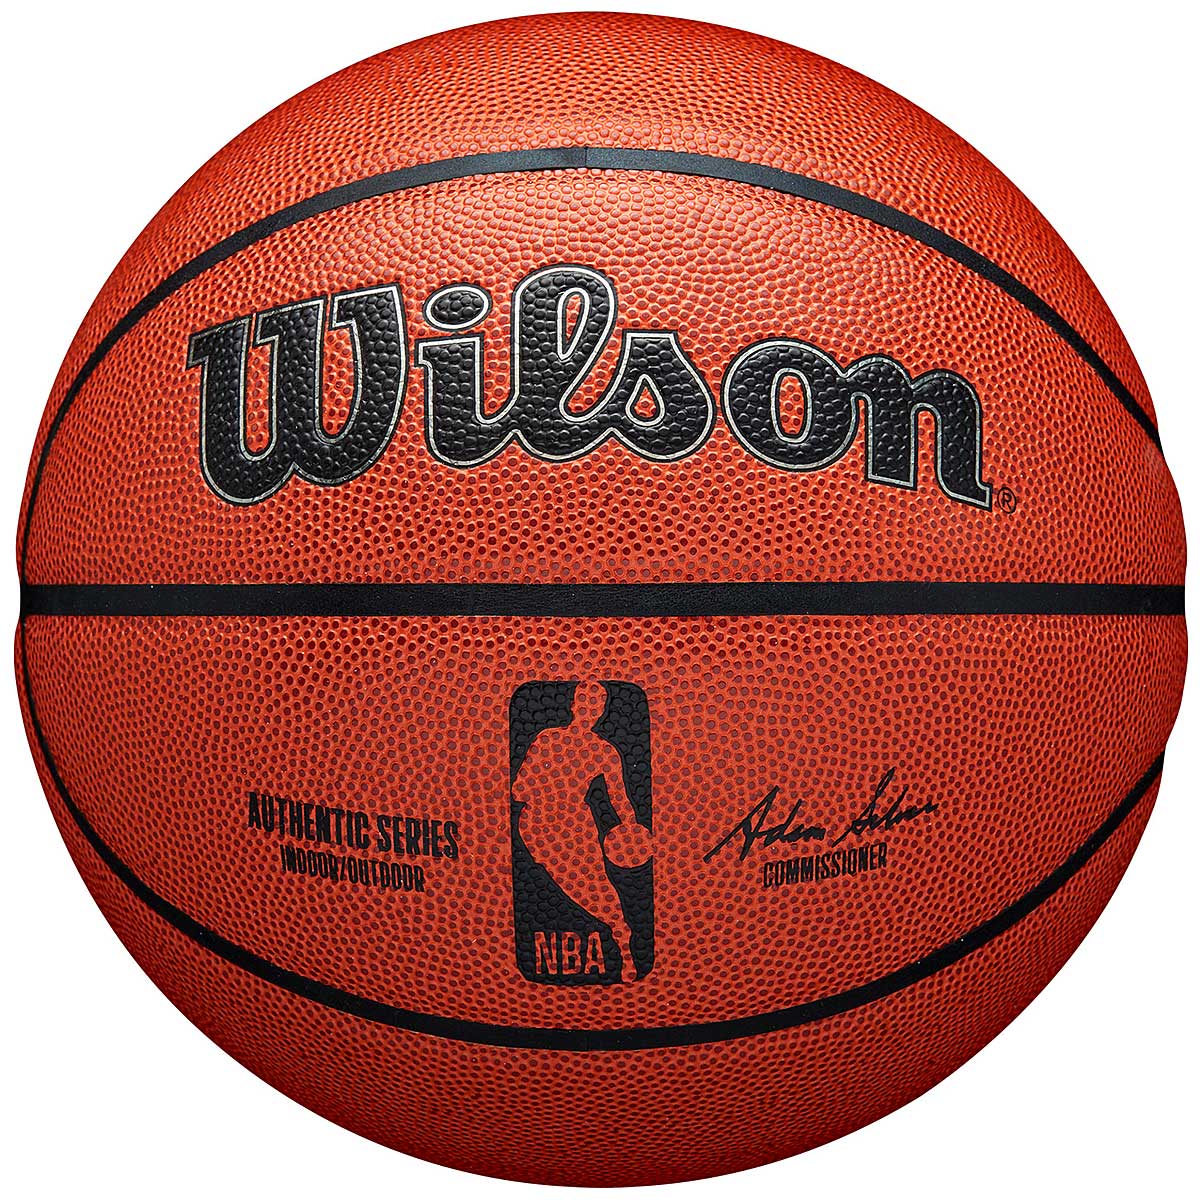 Wilson Nba Authentic Indoor Outdoor Basketball, Brown